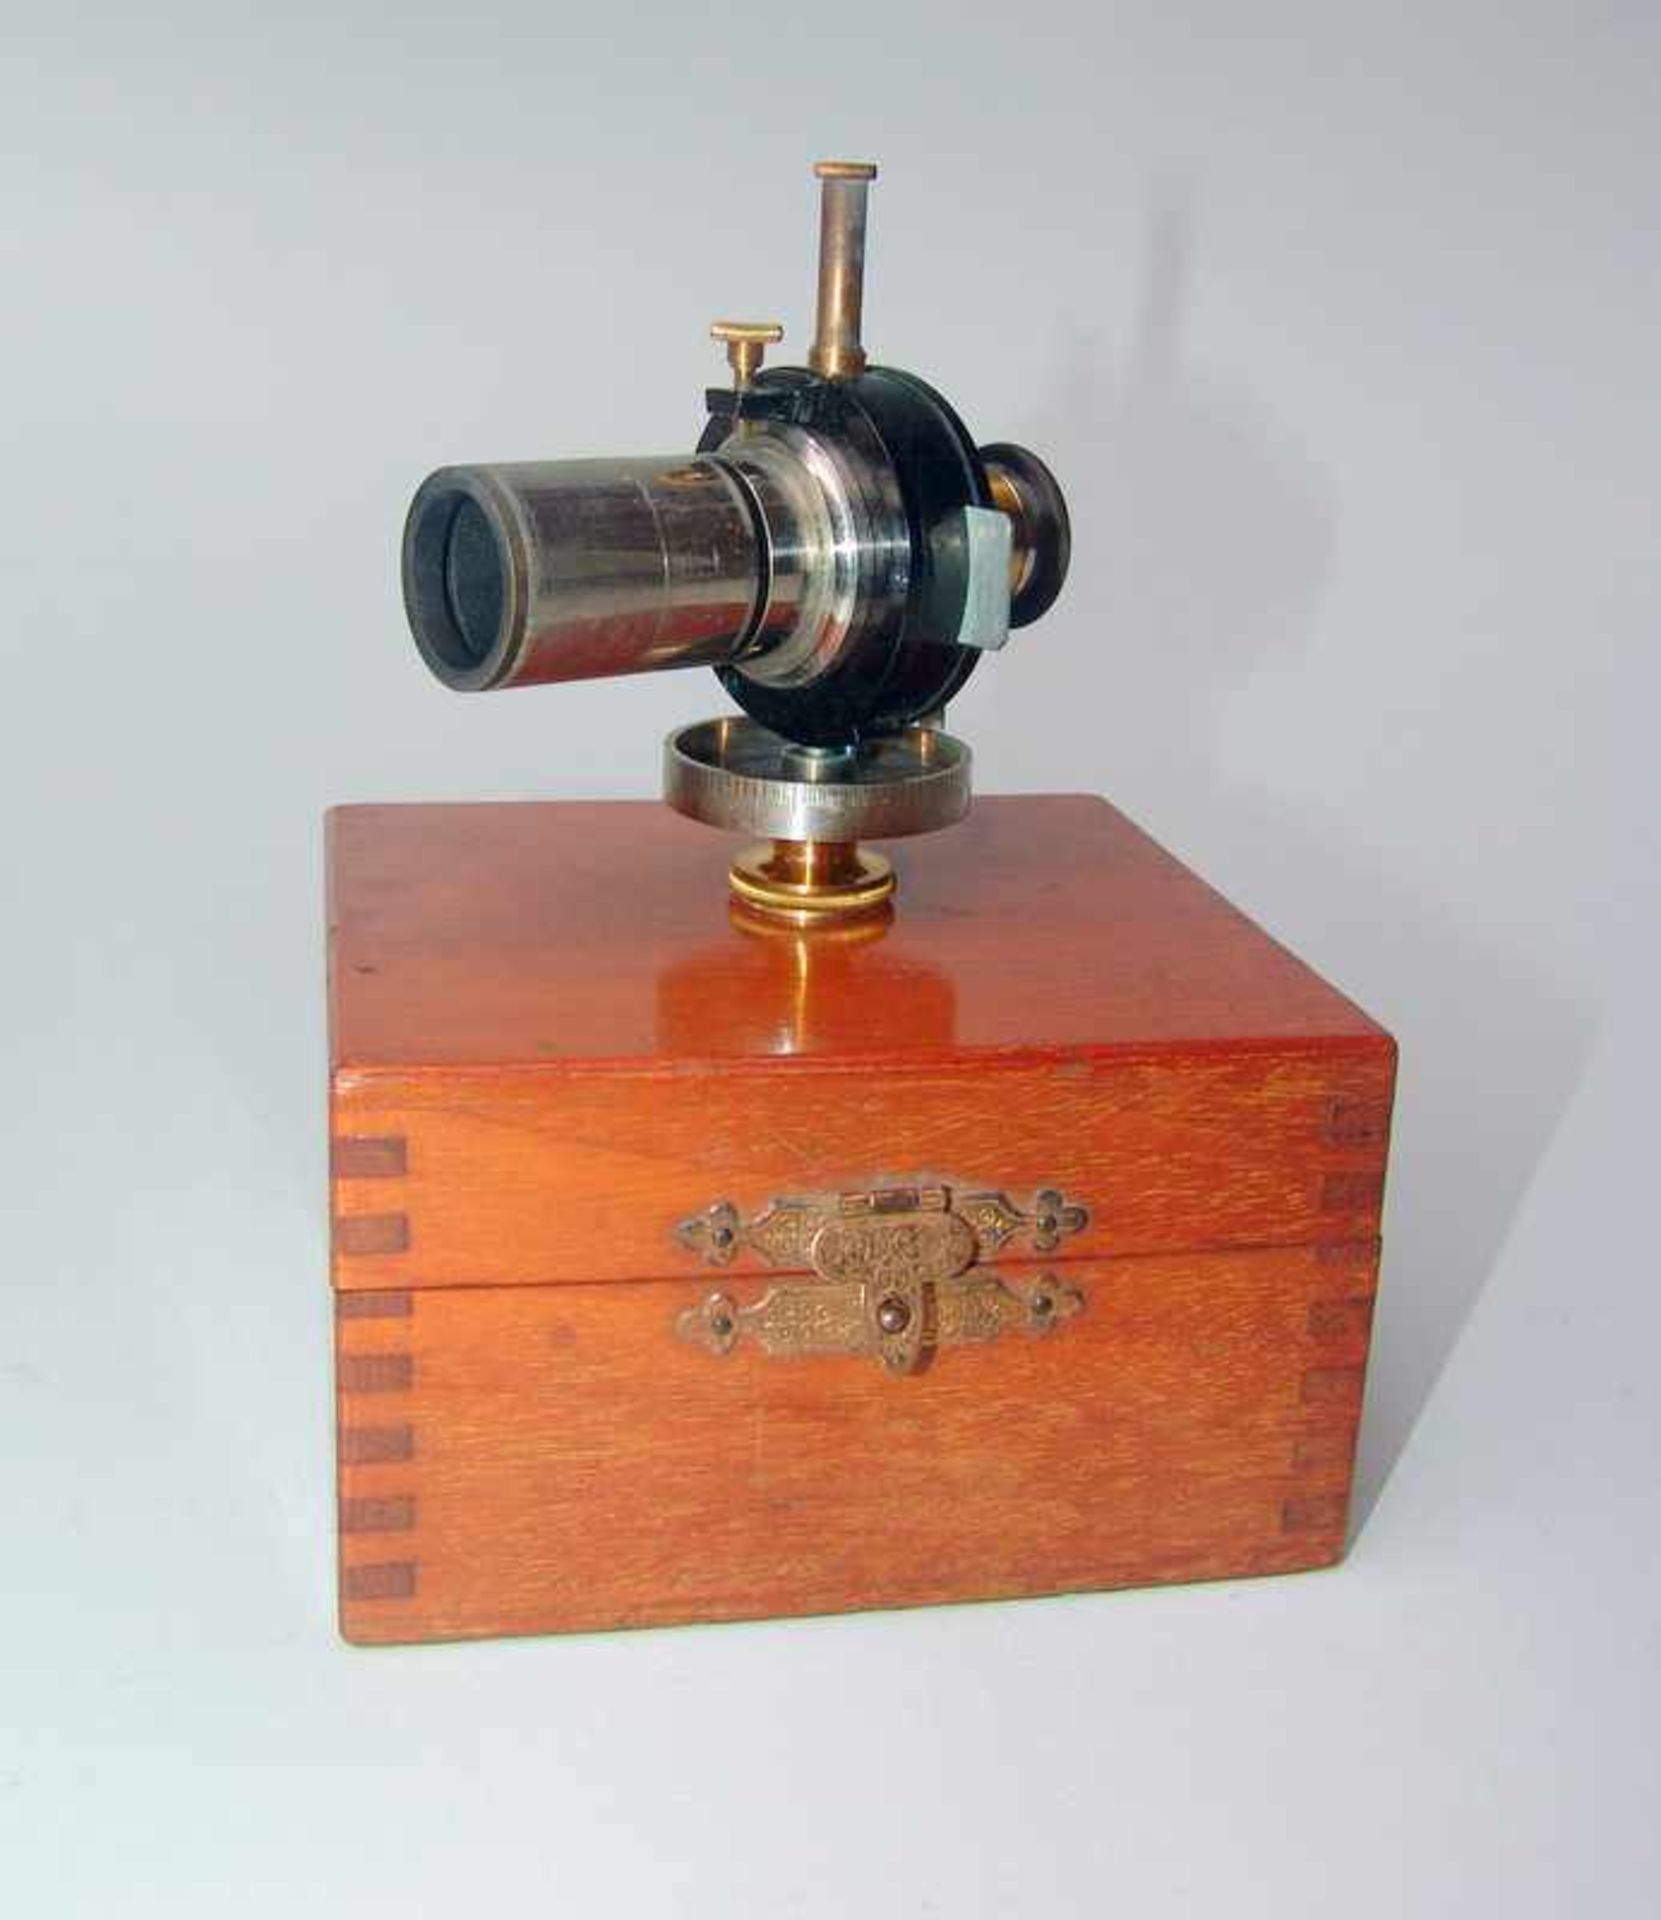 Leitz, E. (Wetzlar): Okular-Element für ein Mikroskop feinmechanisches, optisches Gerät in der orig.